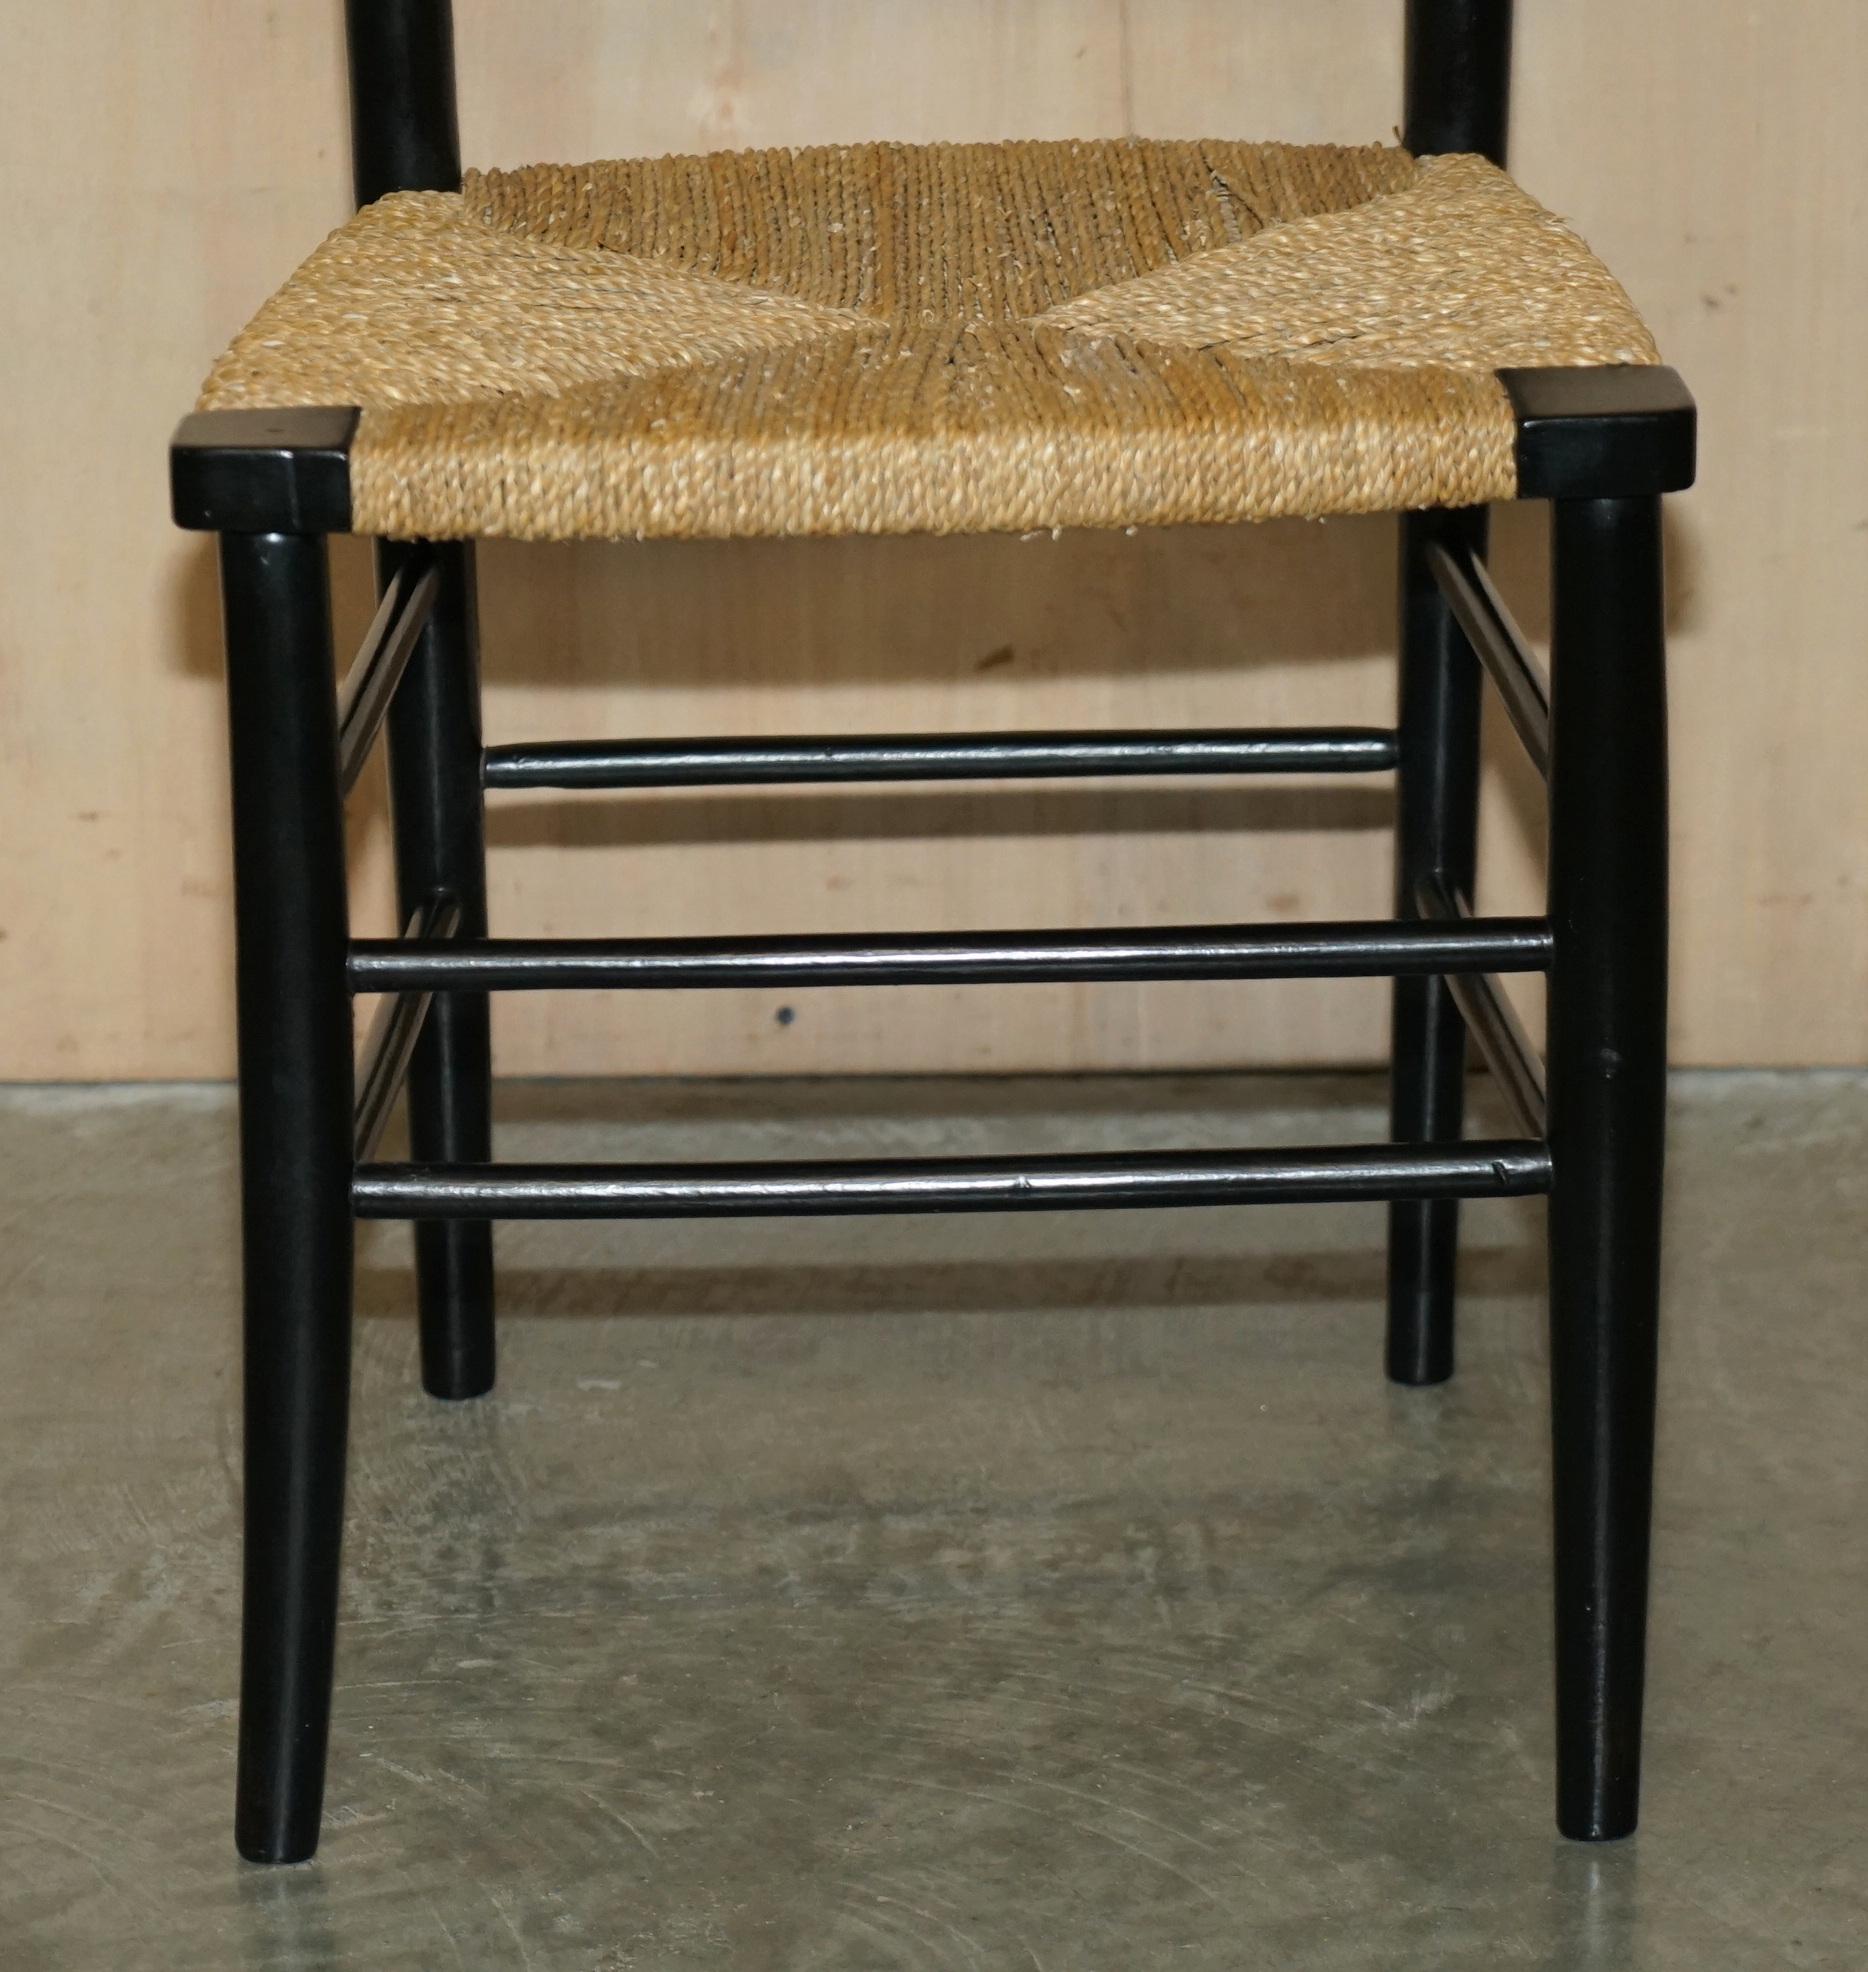 Fin du XIXe siècle Paire de chaises d'appoint anciennes William Morris du Sussex en bois d'ébène vues au musée v&a